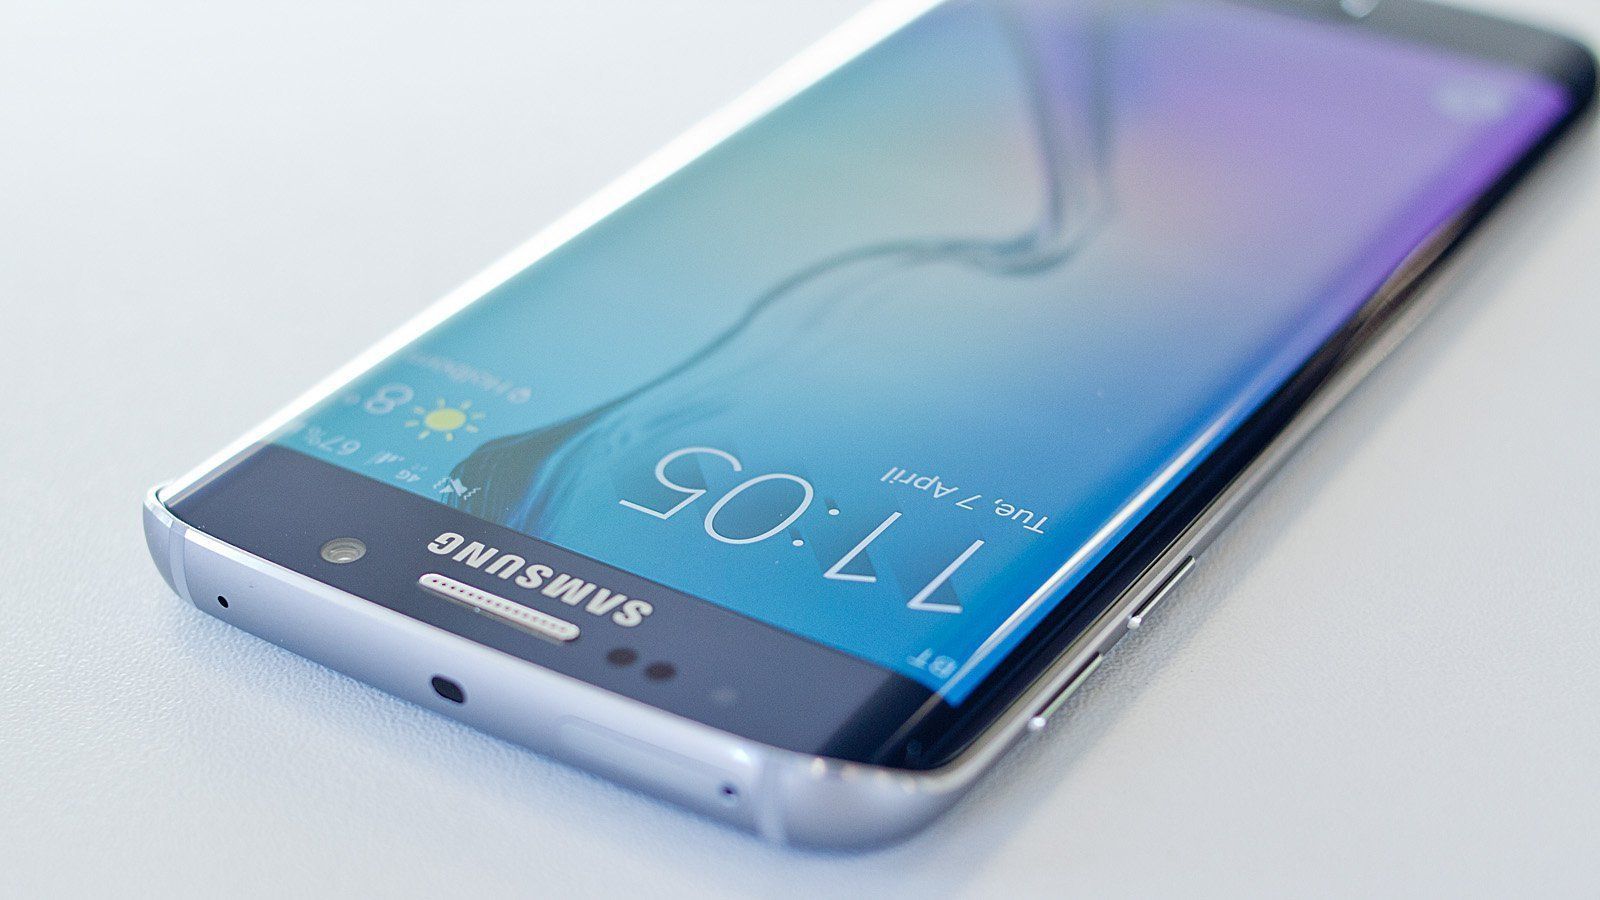 Samsung Galaxy S7 et S7 Edge : les prix déjà dévoilés